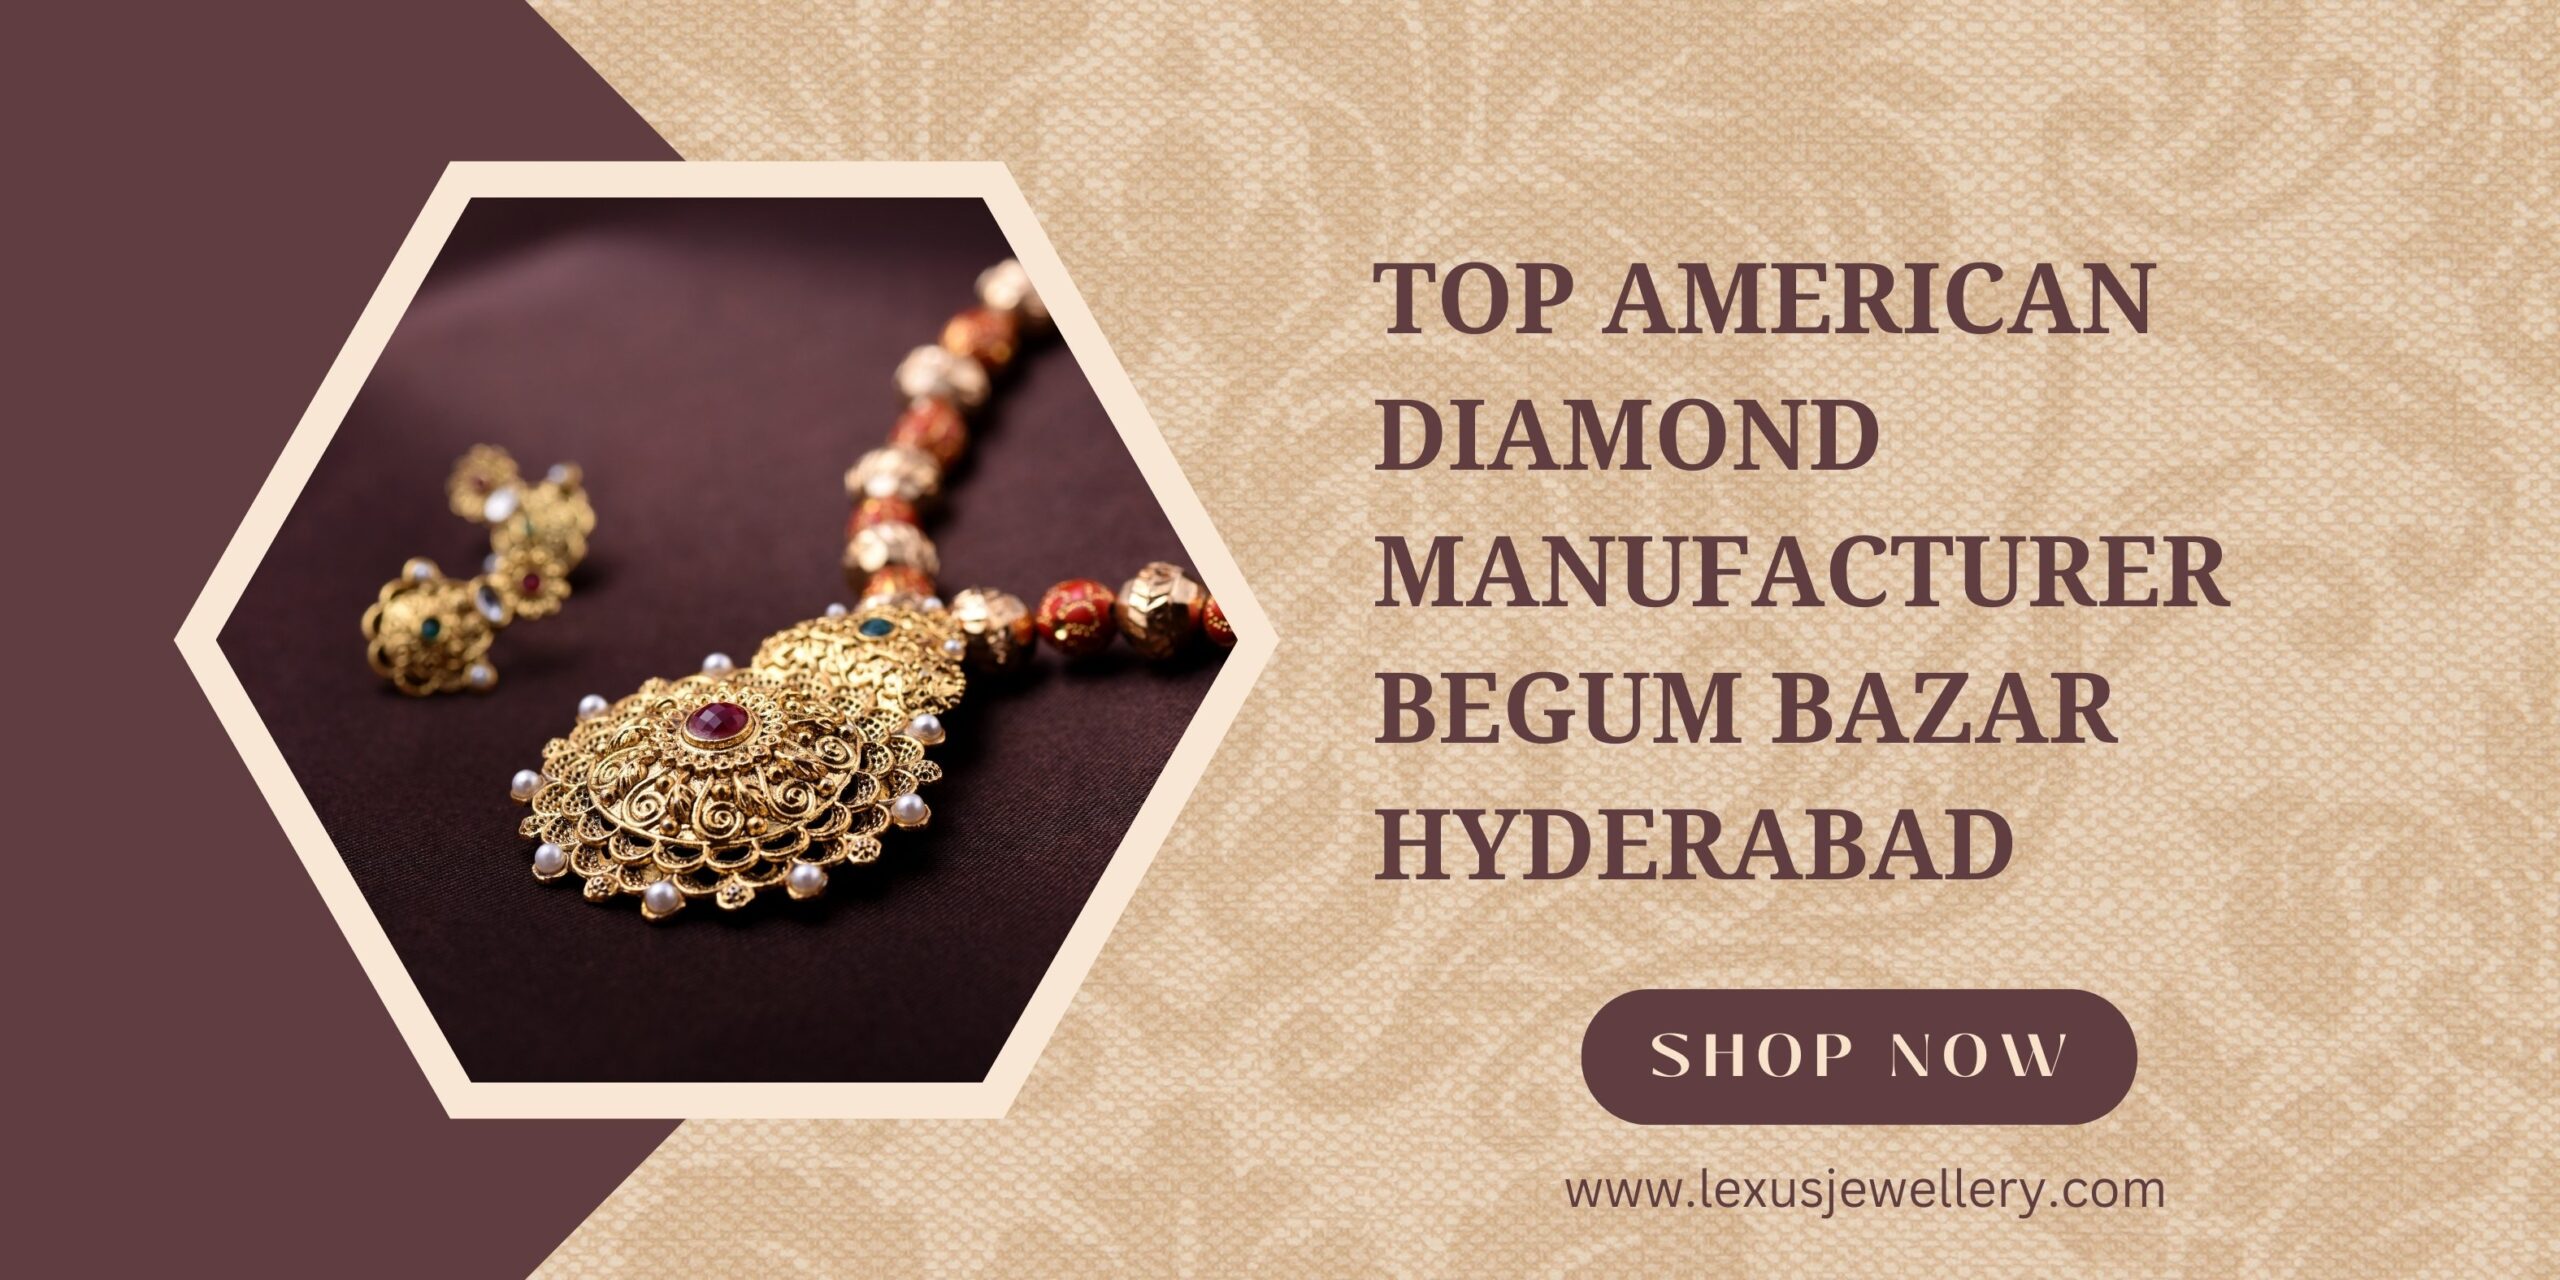 Top-American-Diamond-Manufacturer-begum-bazar-hyderabad